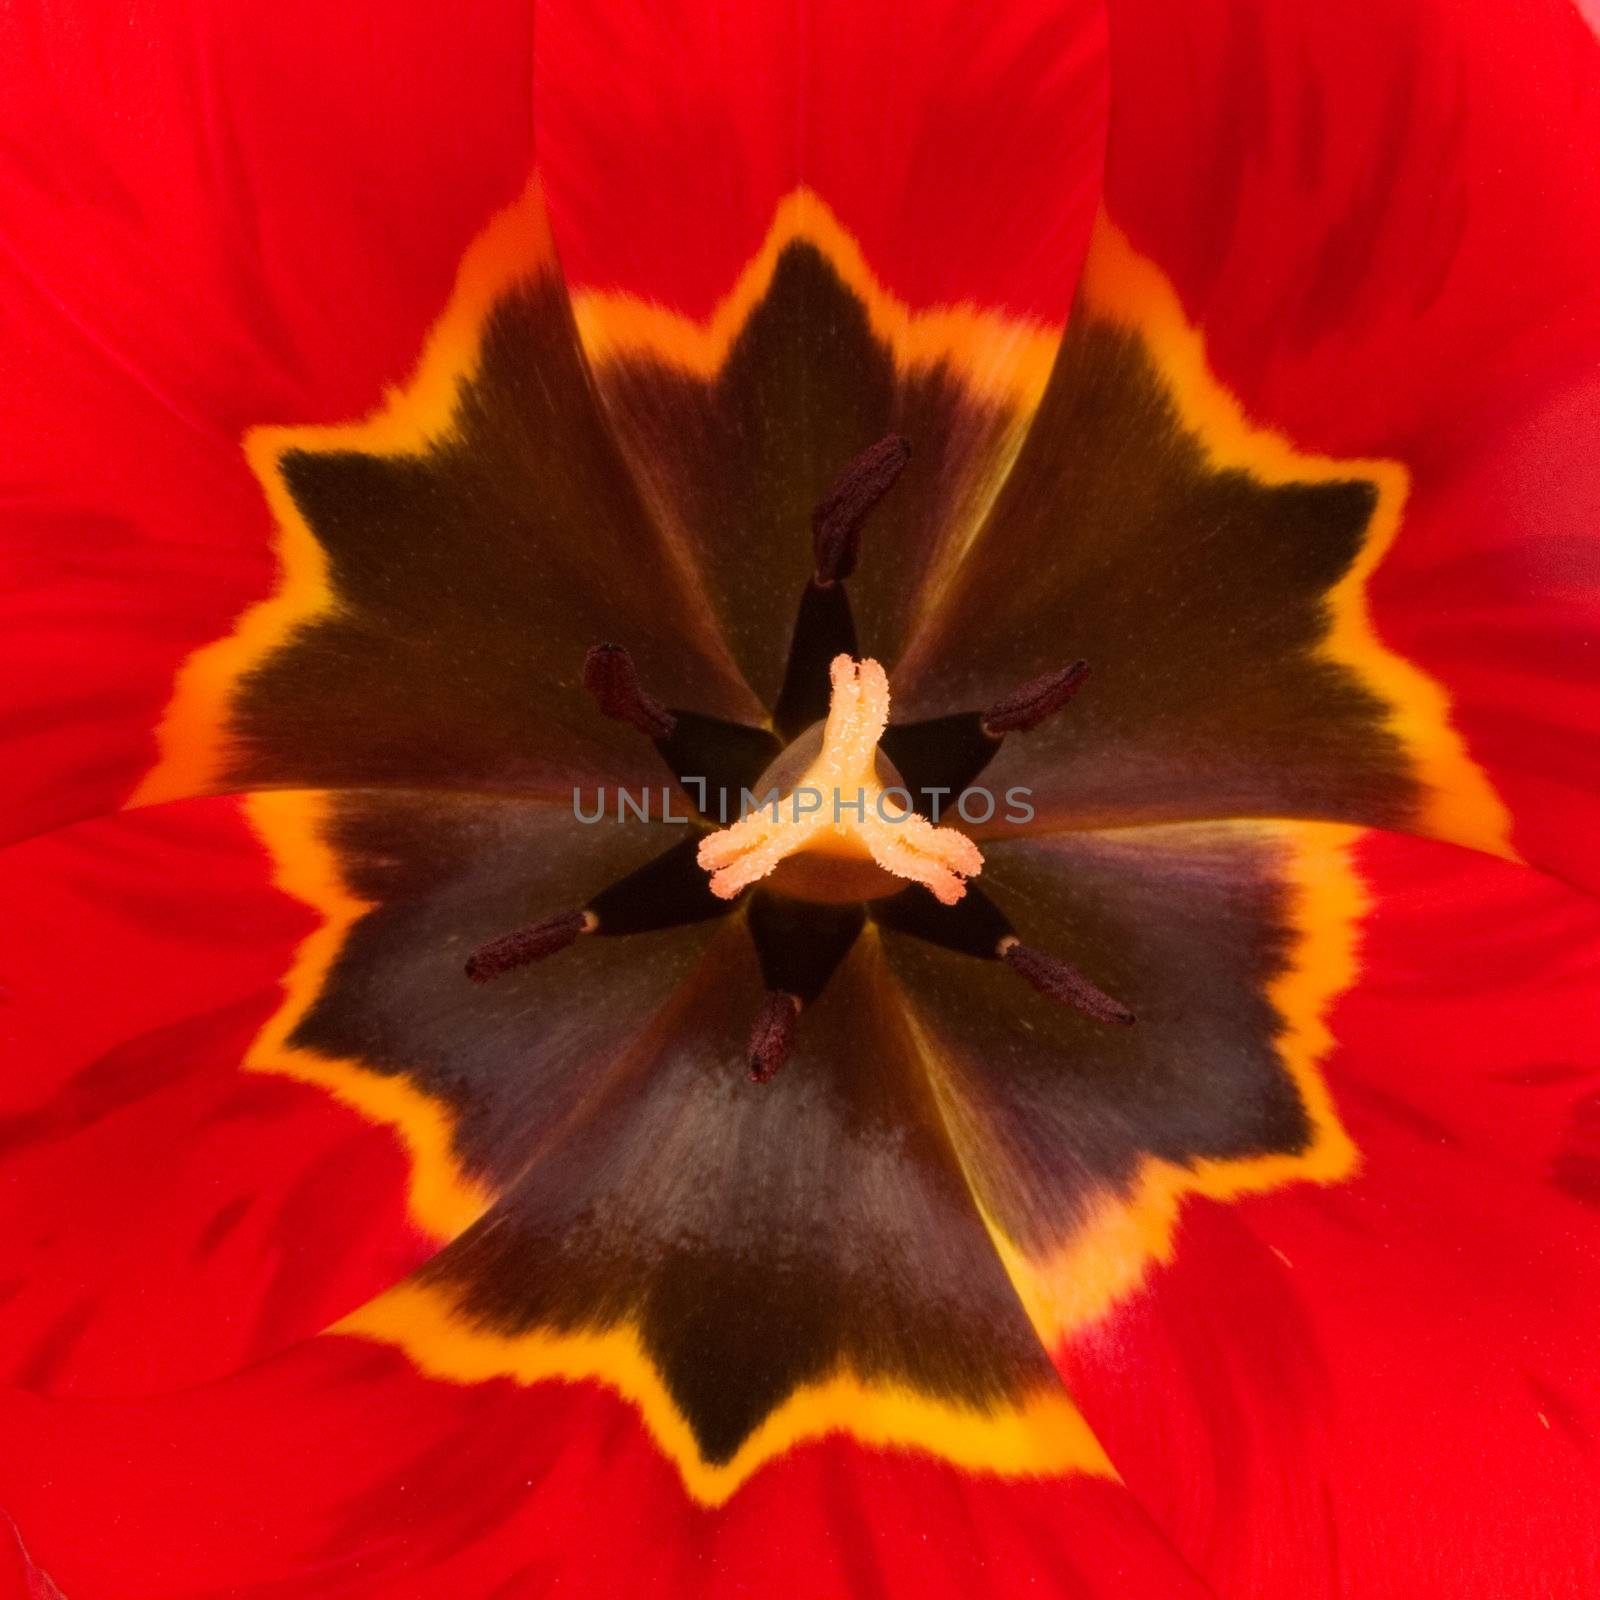 Red tulip detail